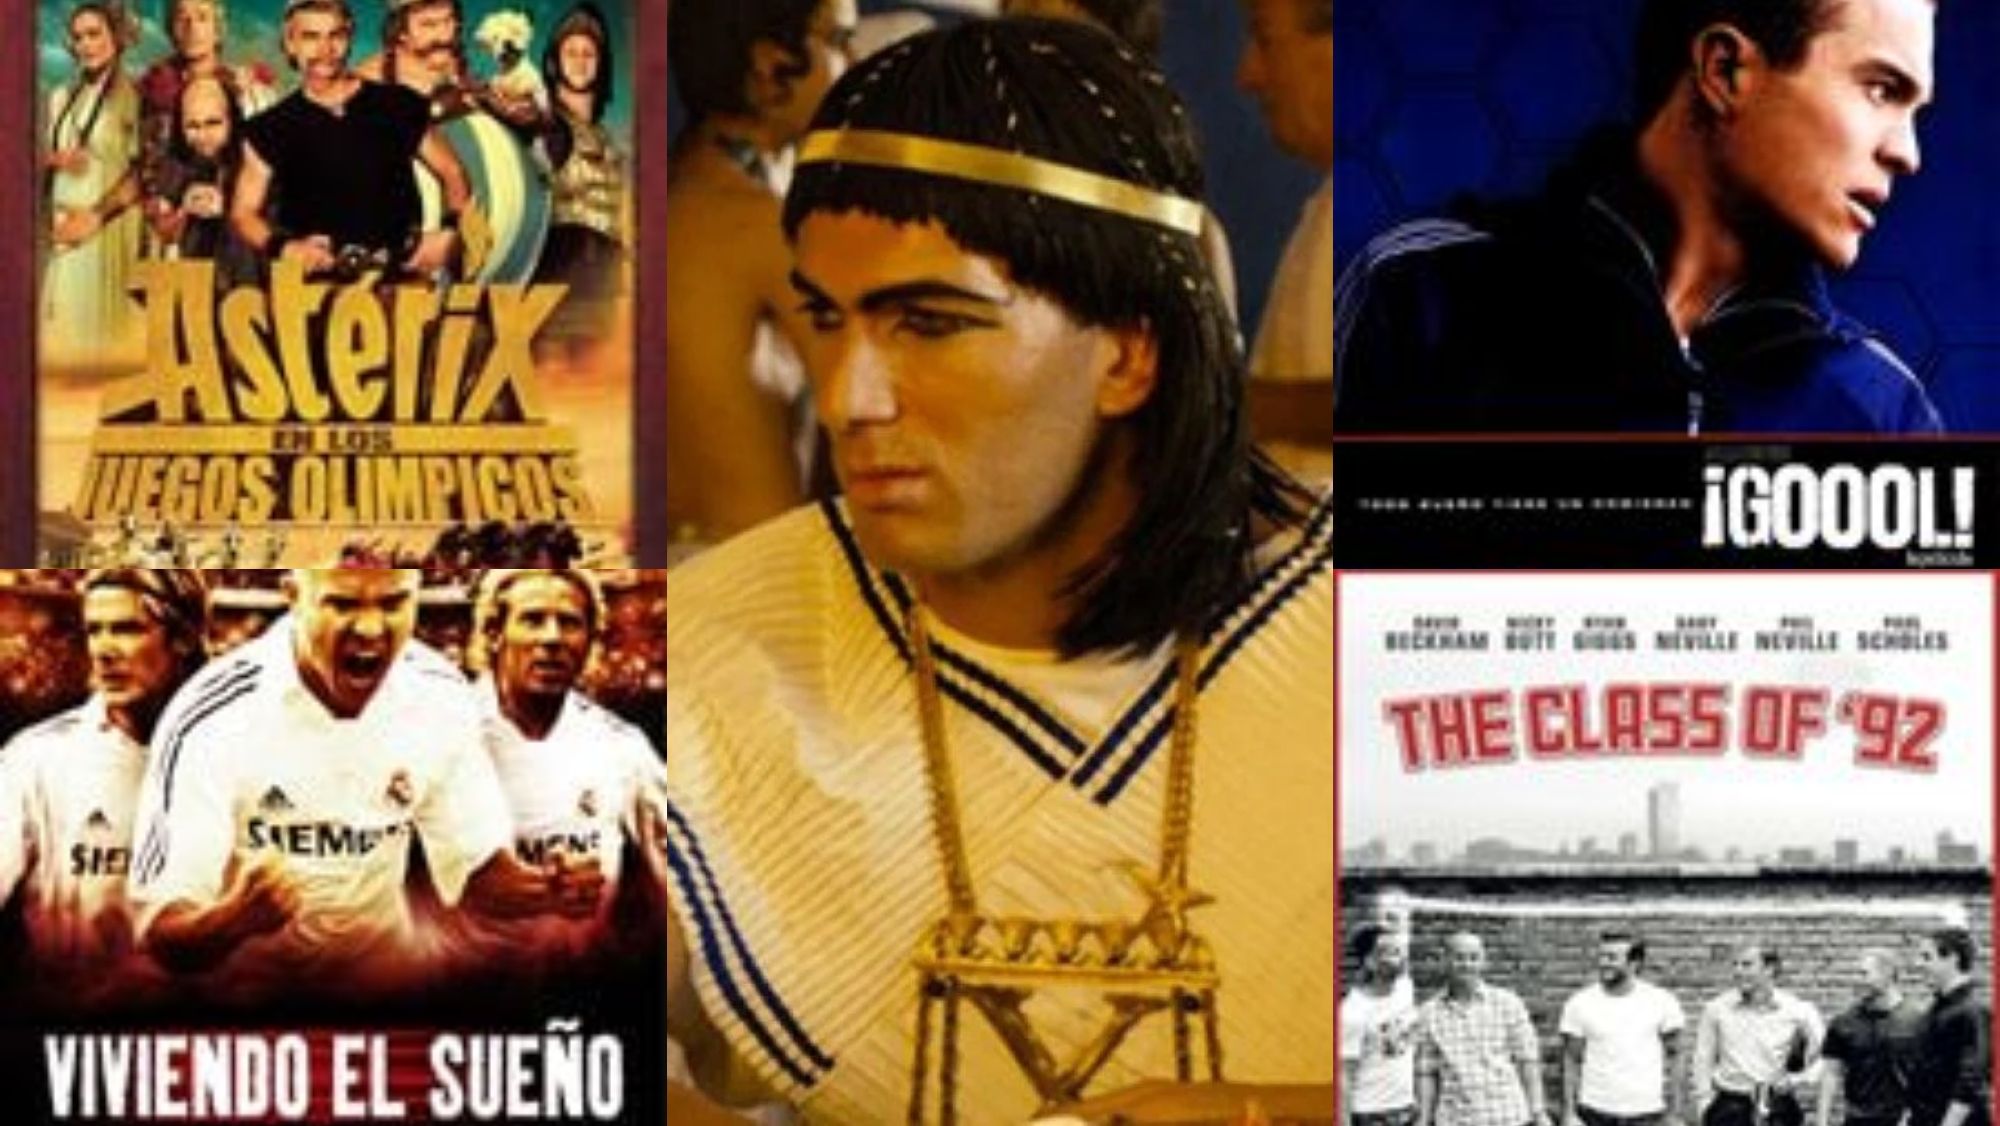 Las películas en las que ha intervenido Zinedine Zidane